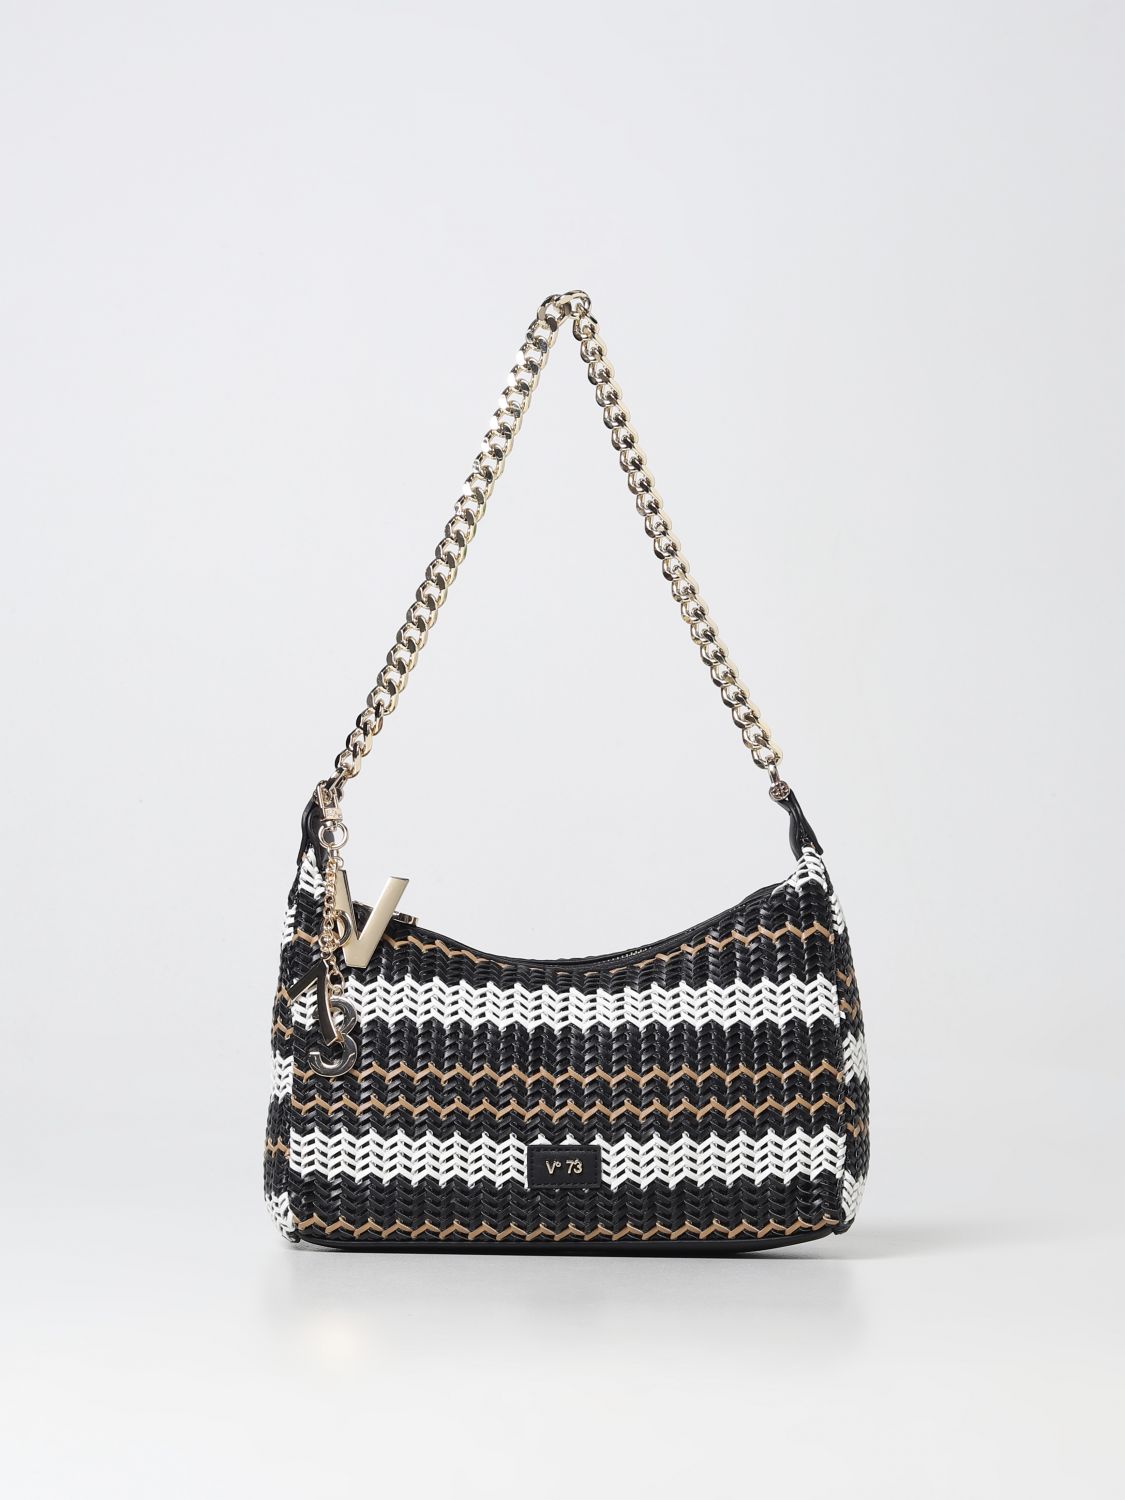 V73: shoulder bag for woman - Black | V73 shoulder bag 73BS6U503 online ...